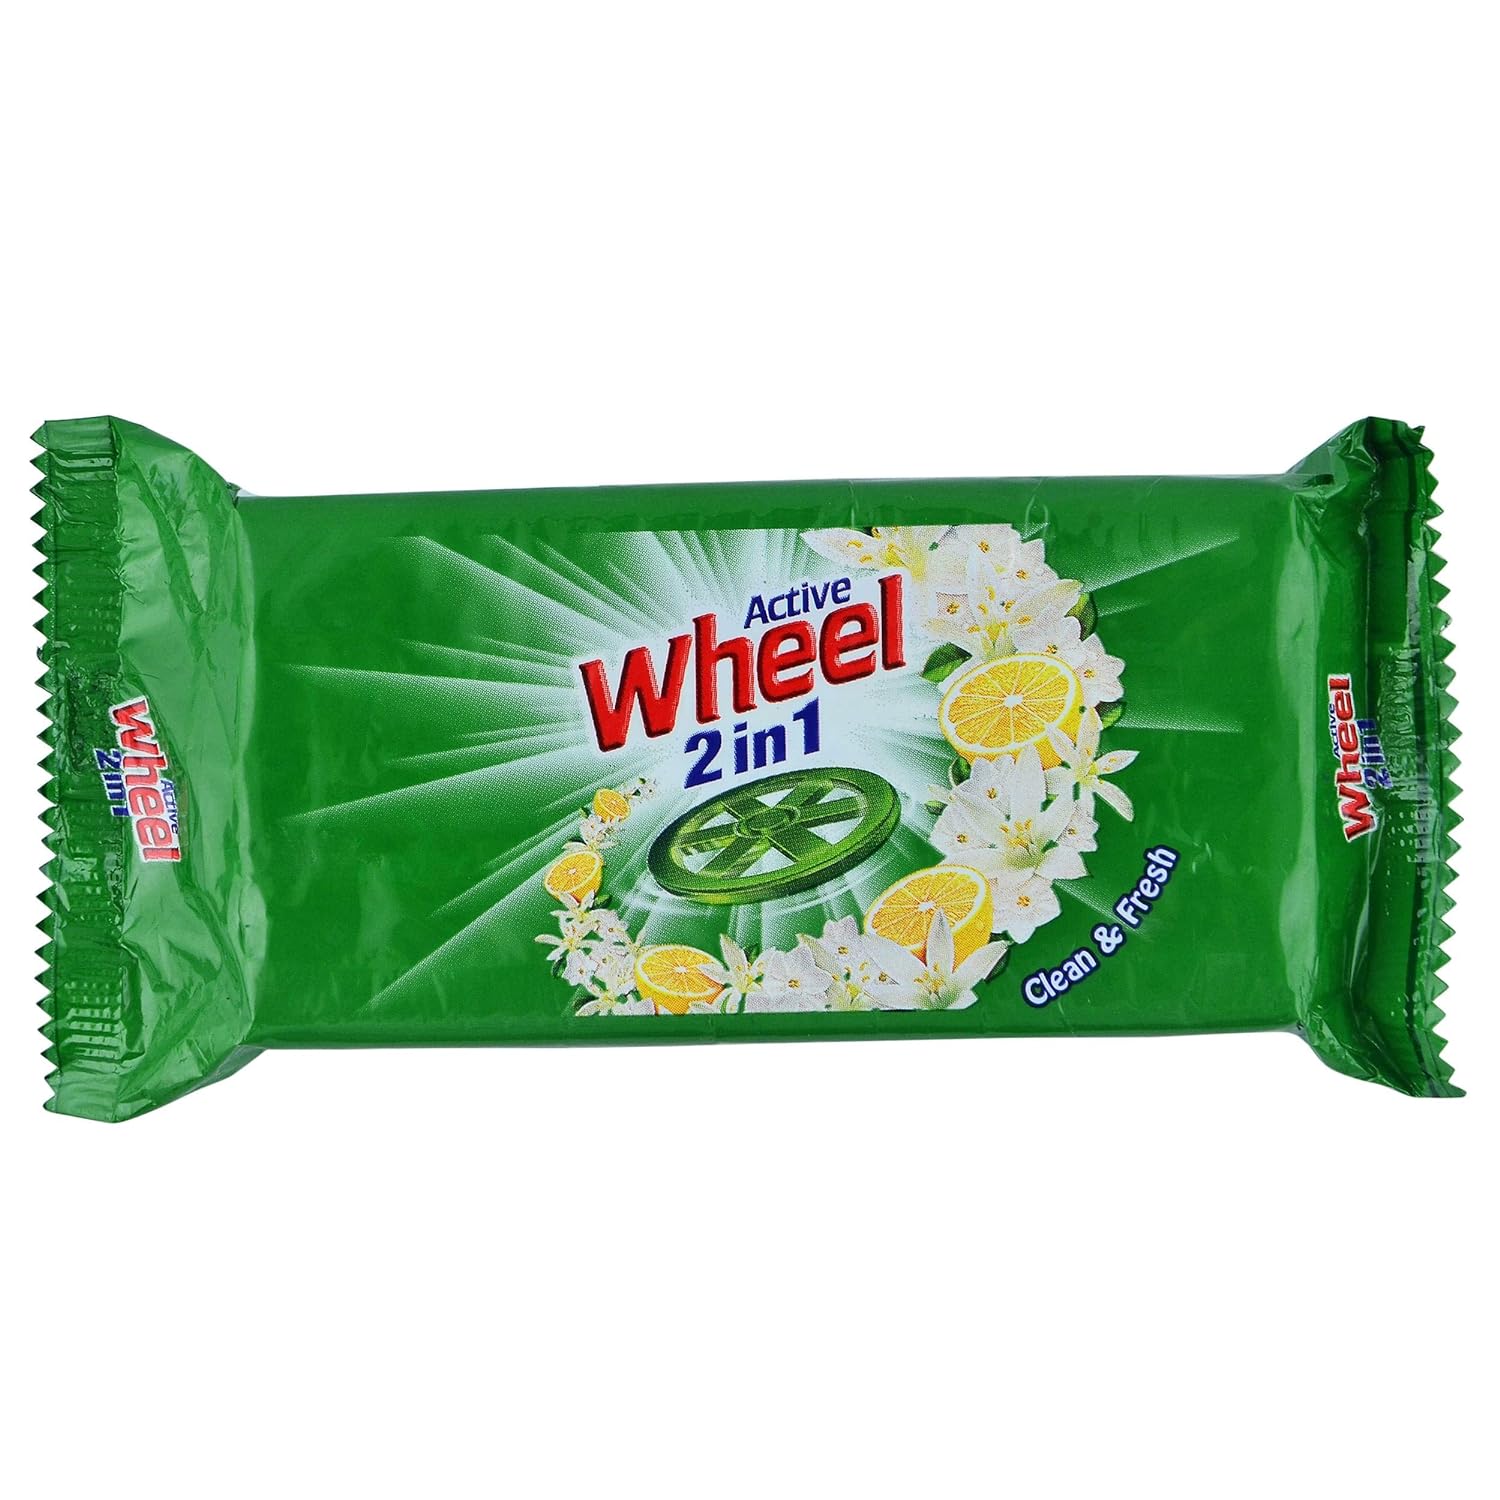 Wheel Green Fresh & Clean Detergent Bar